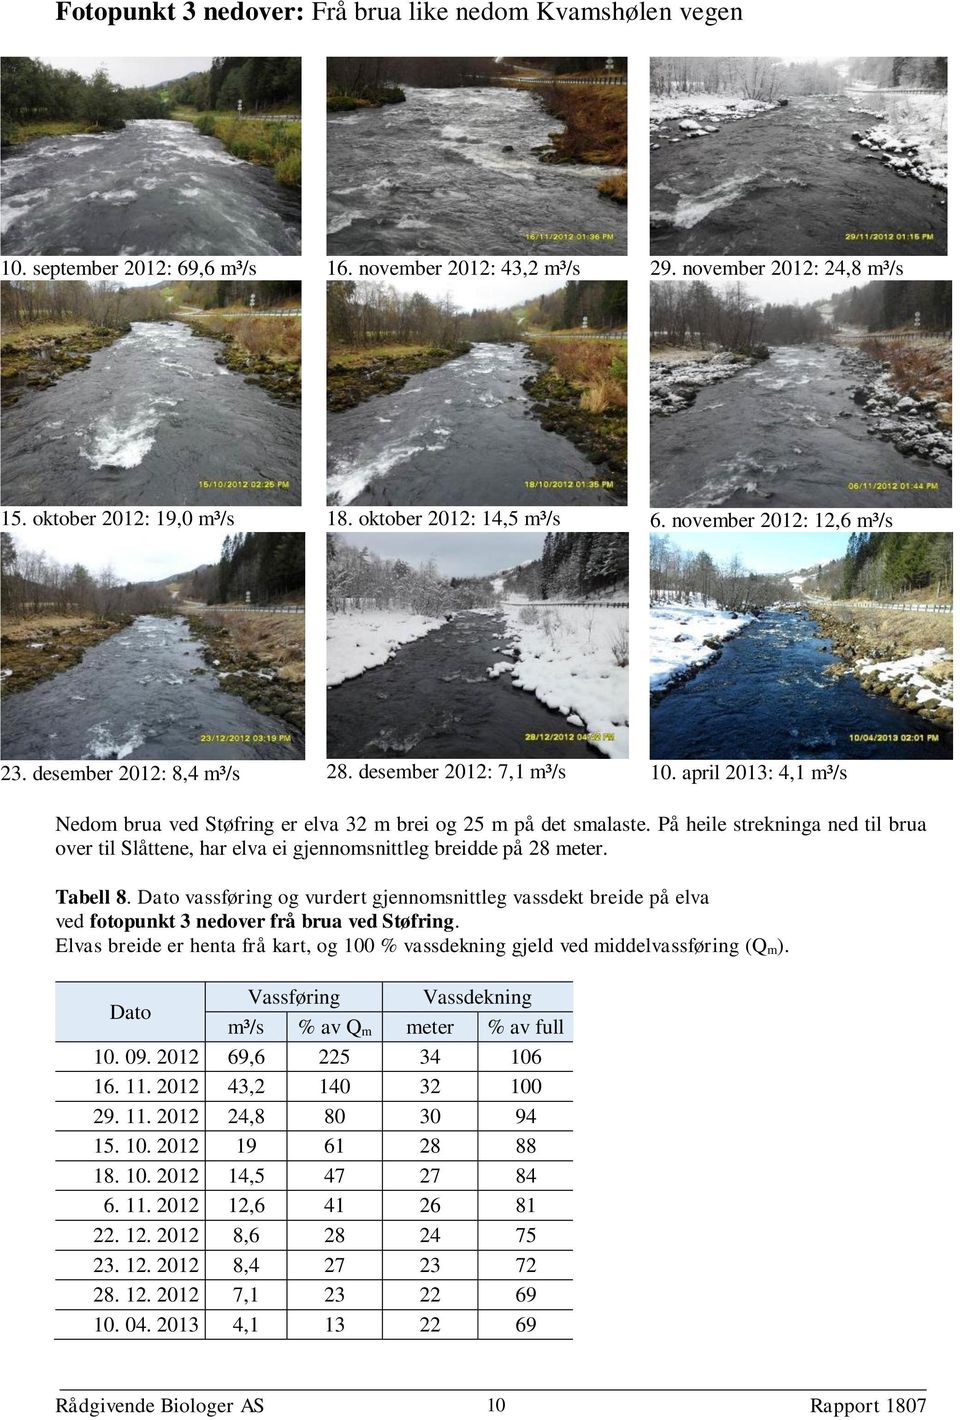 Tabell 8. vassføring og vurdert gjennomsnittleg vassdekt breide på elva ved fotopunkt 3 nedover frå brua ved Støfring.